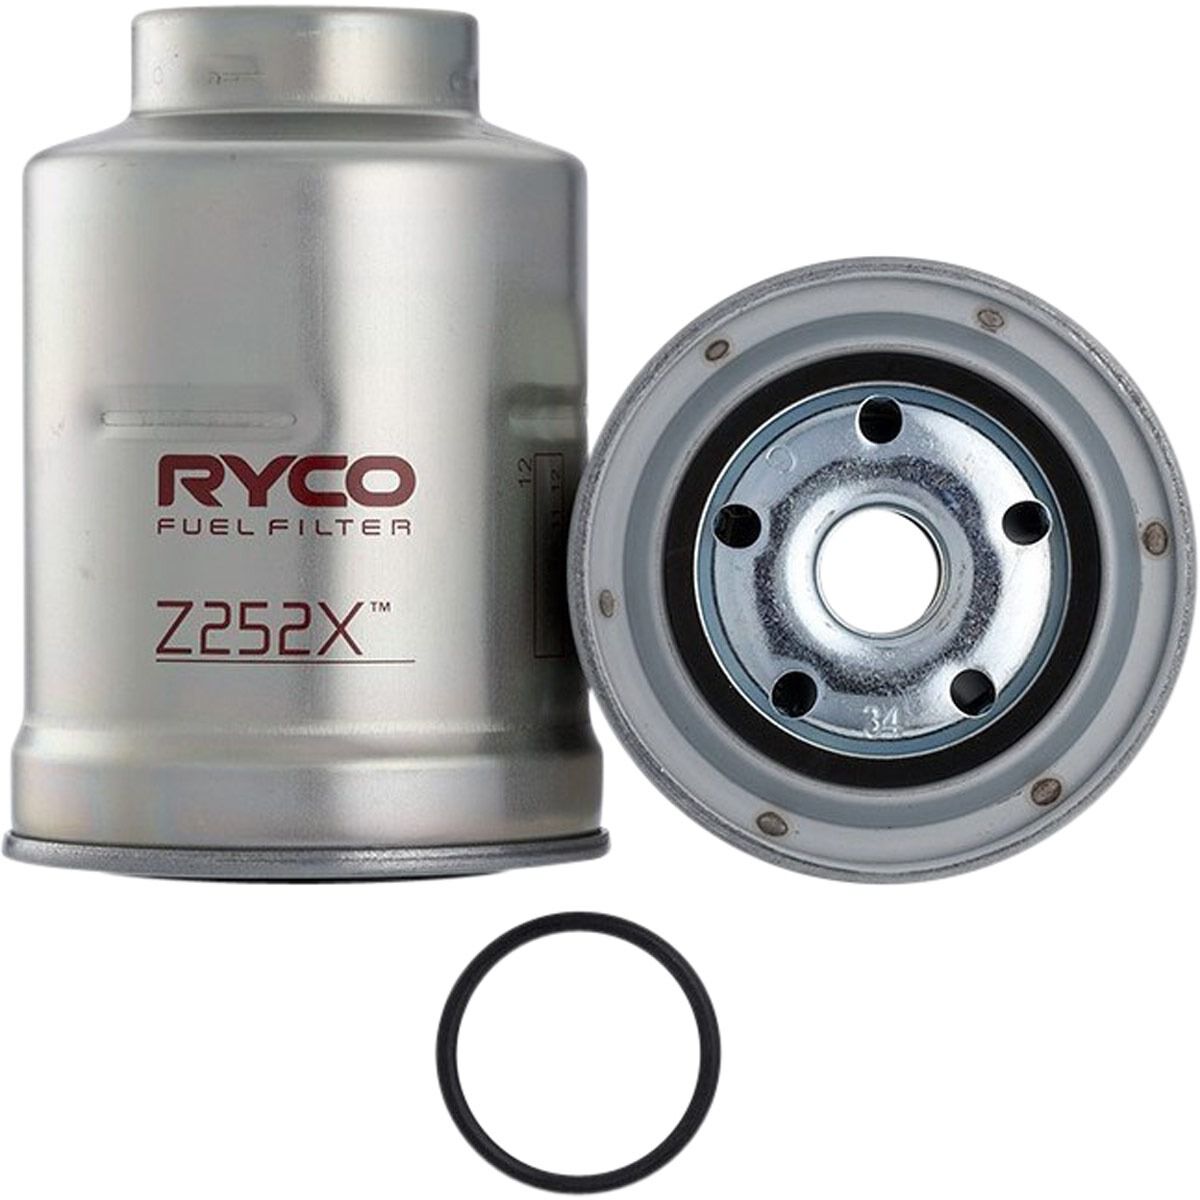 Ryco Fuel Filter - Z252X, , scaau_hi-res